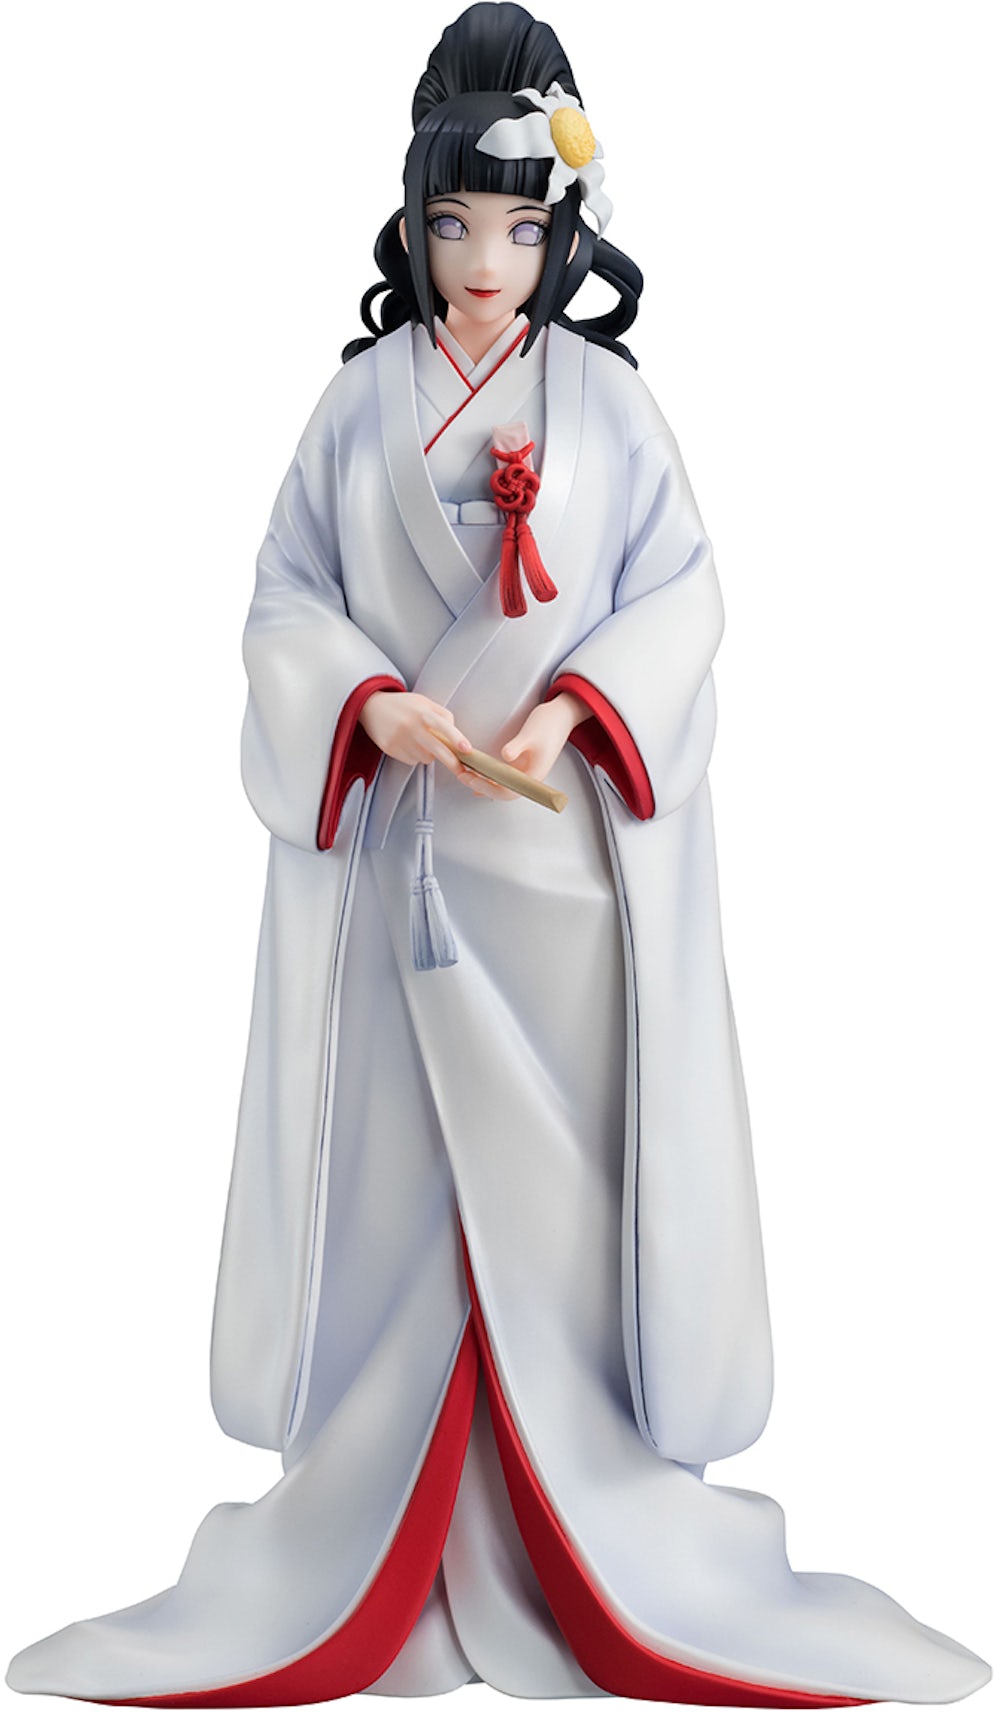 NARUTO SHIPPUDEN figurine G.E.M. Naruto Rikudo Sennin Mode Megahouse